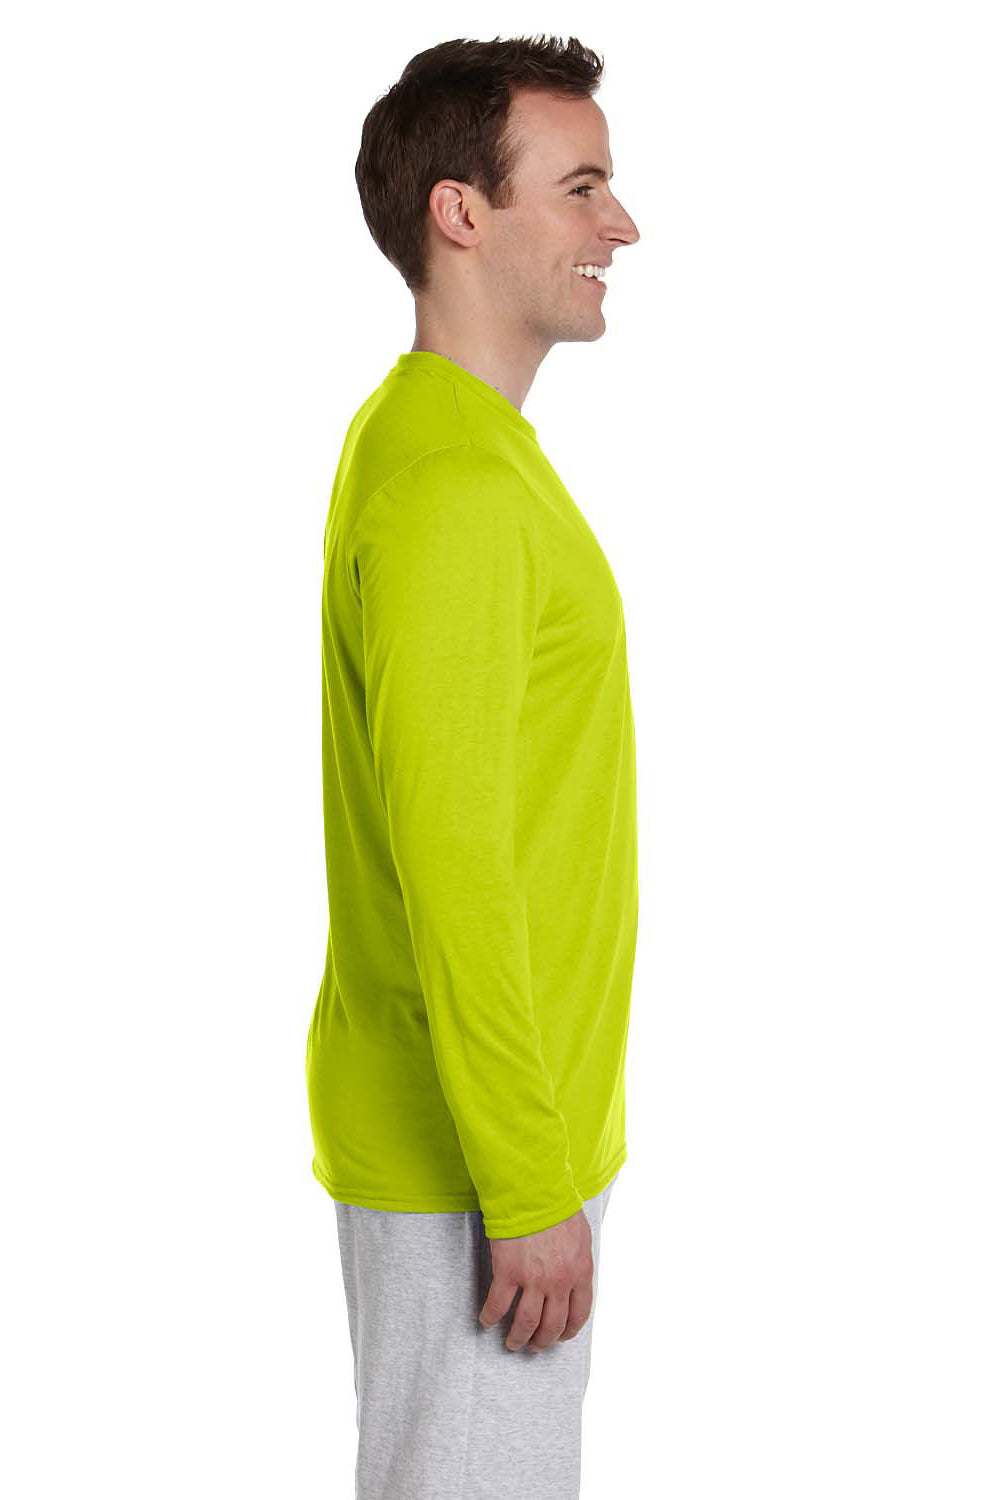 Gildan G424 Mens Performance Jersey Moisture Wicking Long Sleeve Crewneck T-Shirt Safety Green Side